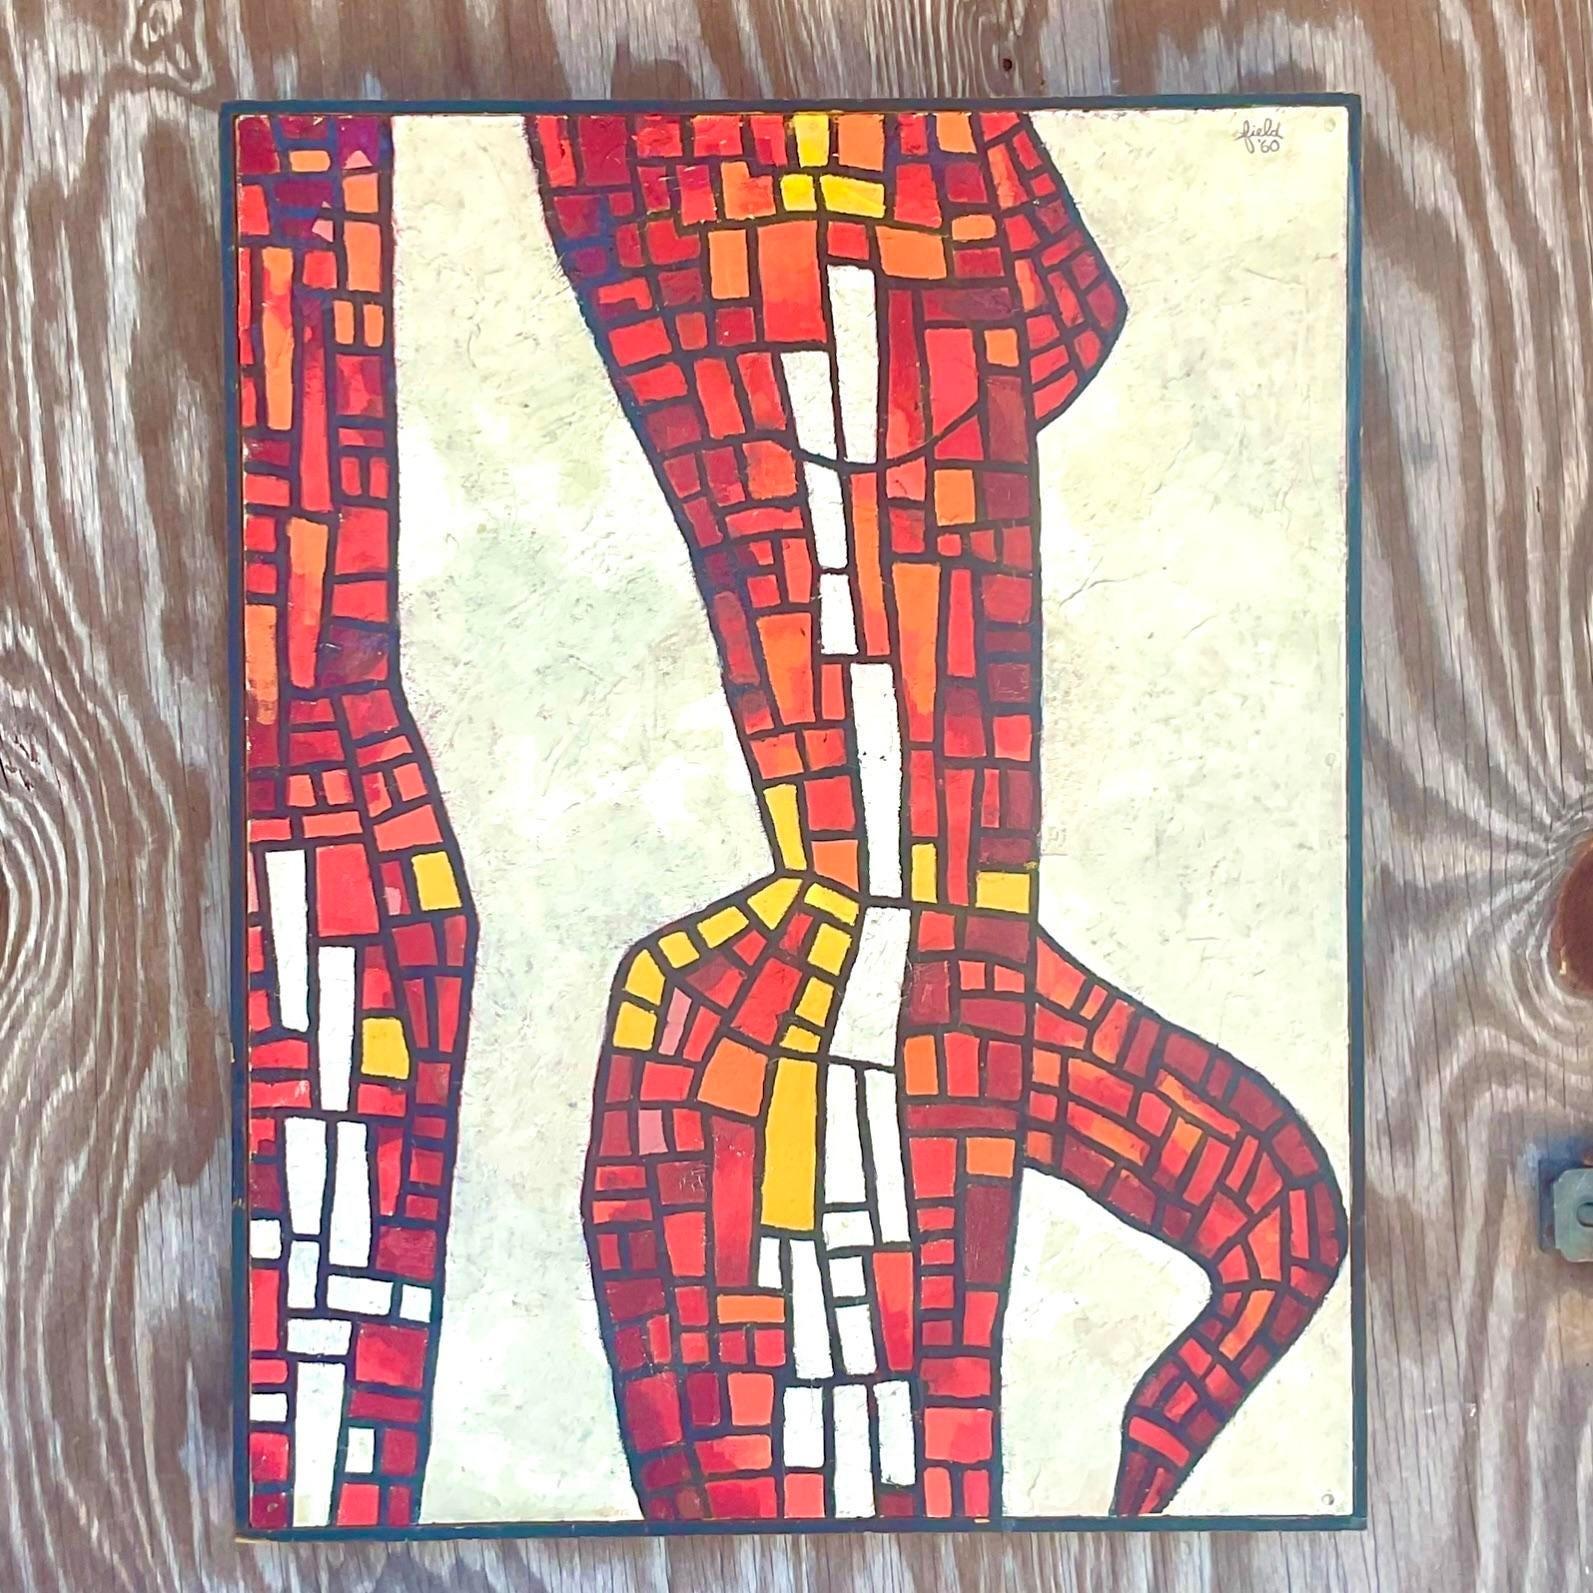 Ein fabelhaftes Original-Ölgemälde im Boho-Stil. Eine schicke abstrakte expressionistische Komposition in leuchtenden Rot- und Orangetönen. Vom Künstler signiert und datiert. Erworben aus einem Nachlass in Palm Beach.